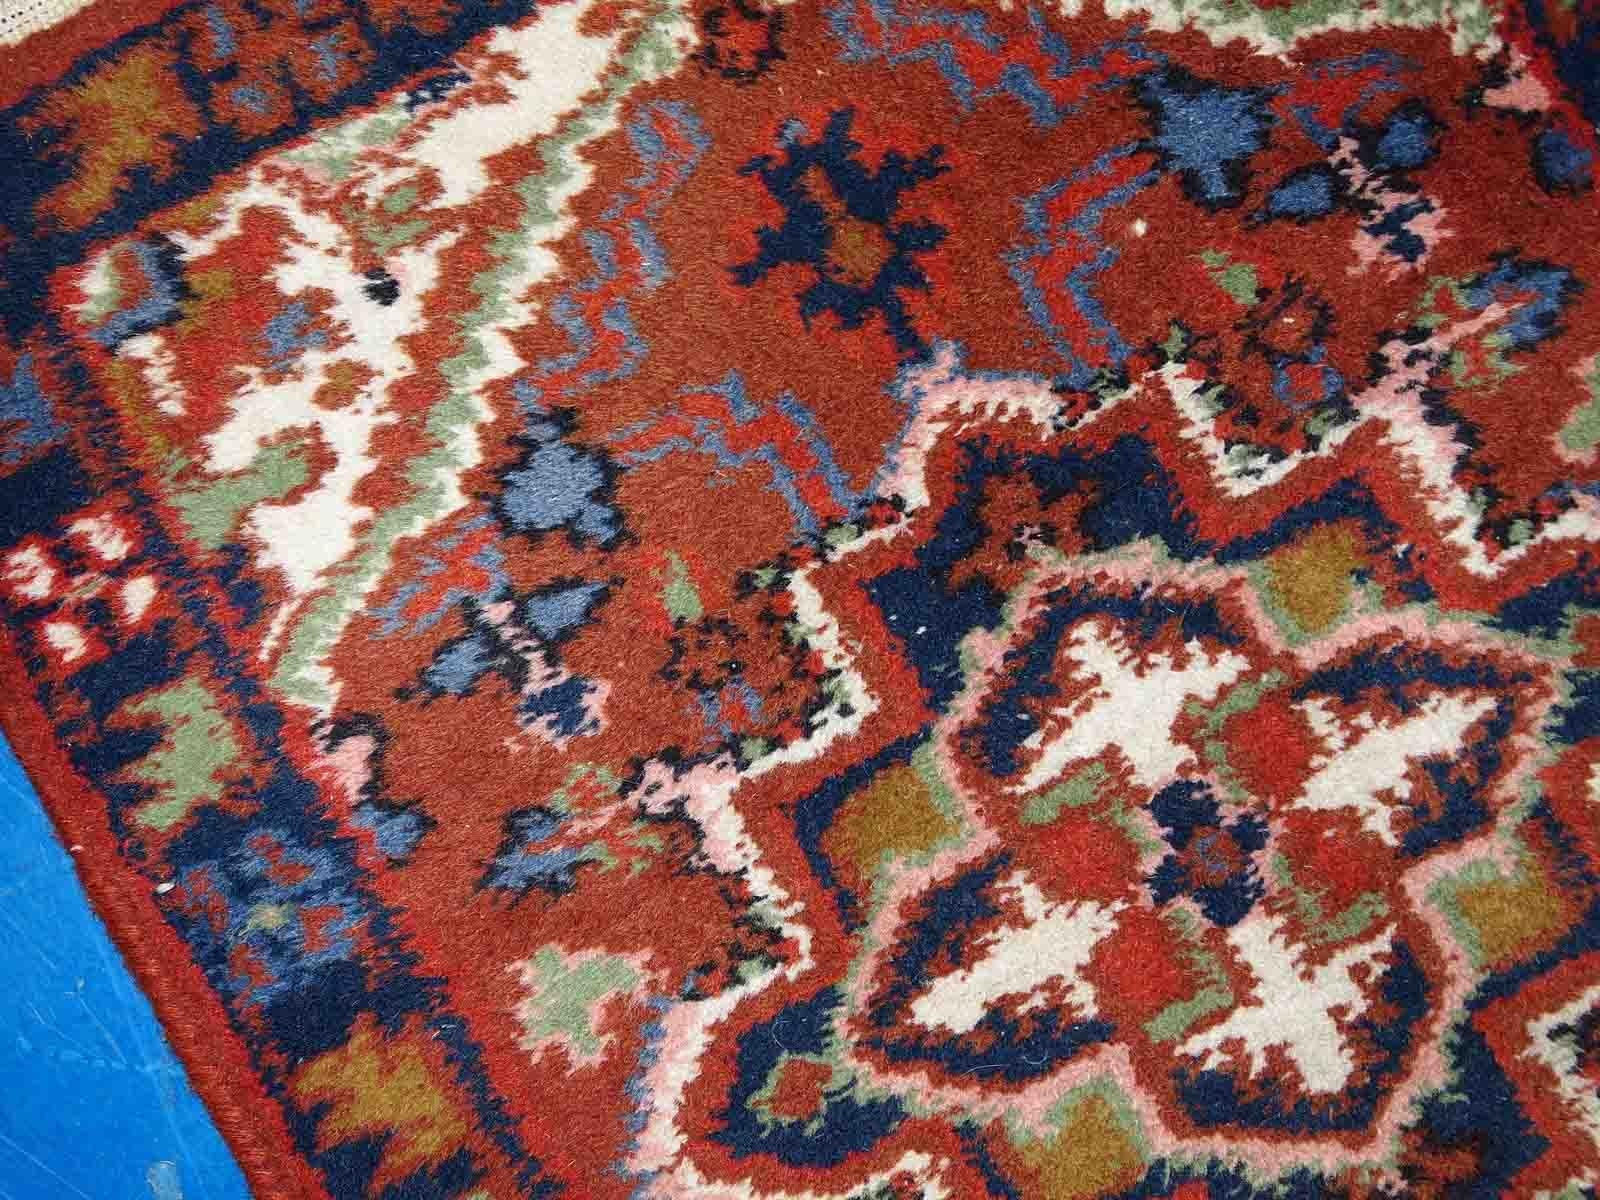 Handgefertigte Hamadan-Matte aus dem Nahen Osten in gutem Originalzustand. Der Teppich ist aus dem Ende des 20. Jahrhunderts in ziegelroter Farbe.

-zustand: original gut,
?
-etwa: 1970er Jahre,

-größe: 1,6' x 2,3' (50cm x